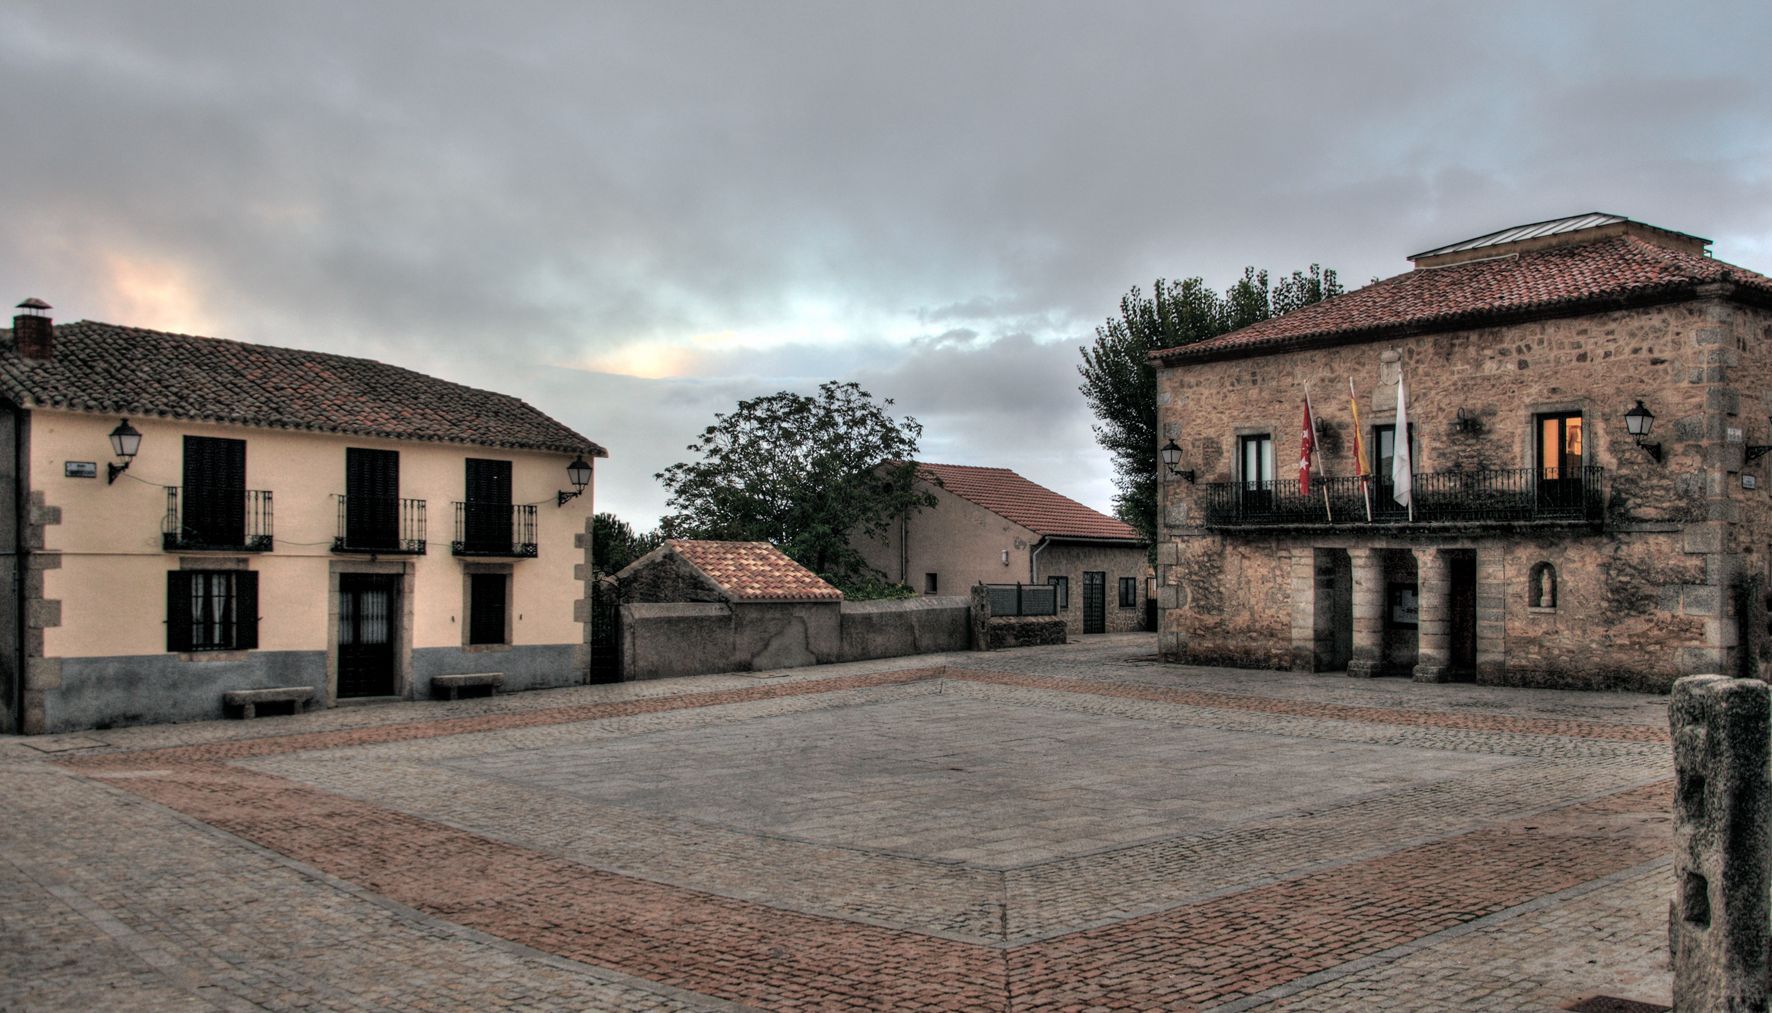 Plaza de la Constitución. Santa María de la alameda, pueblo